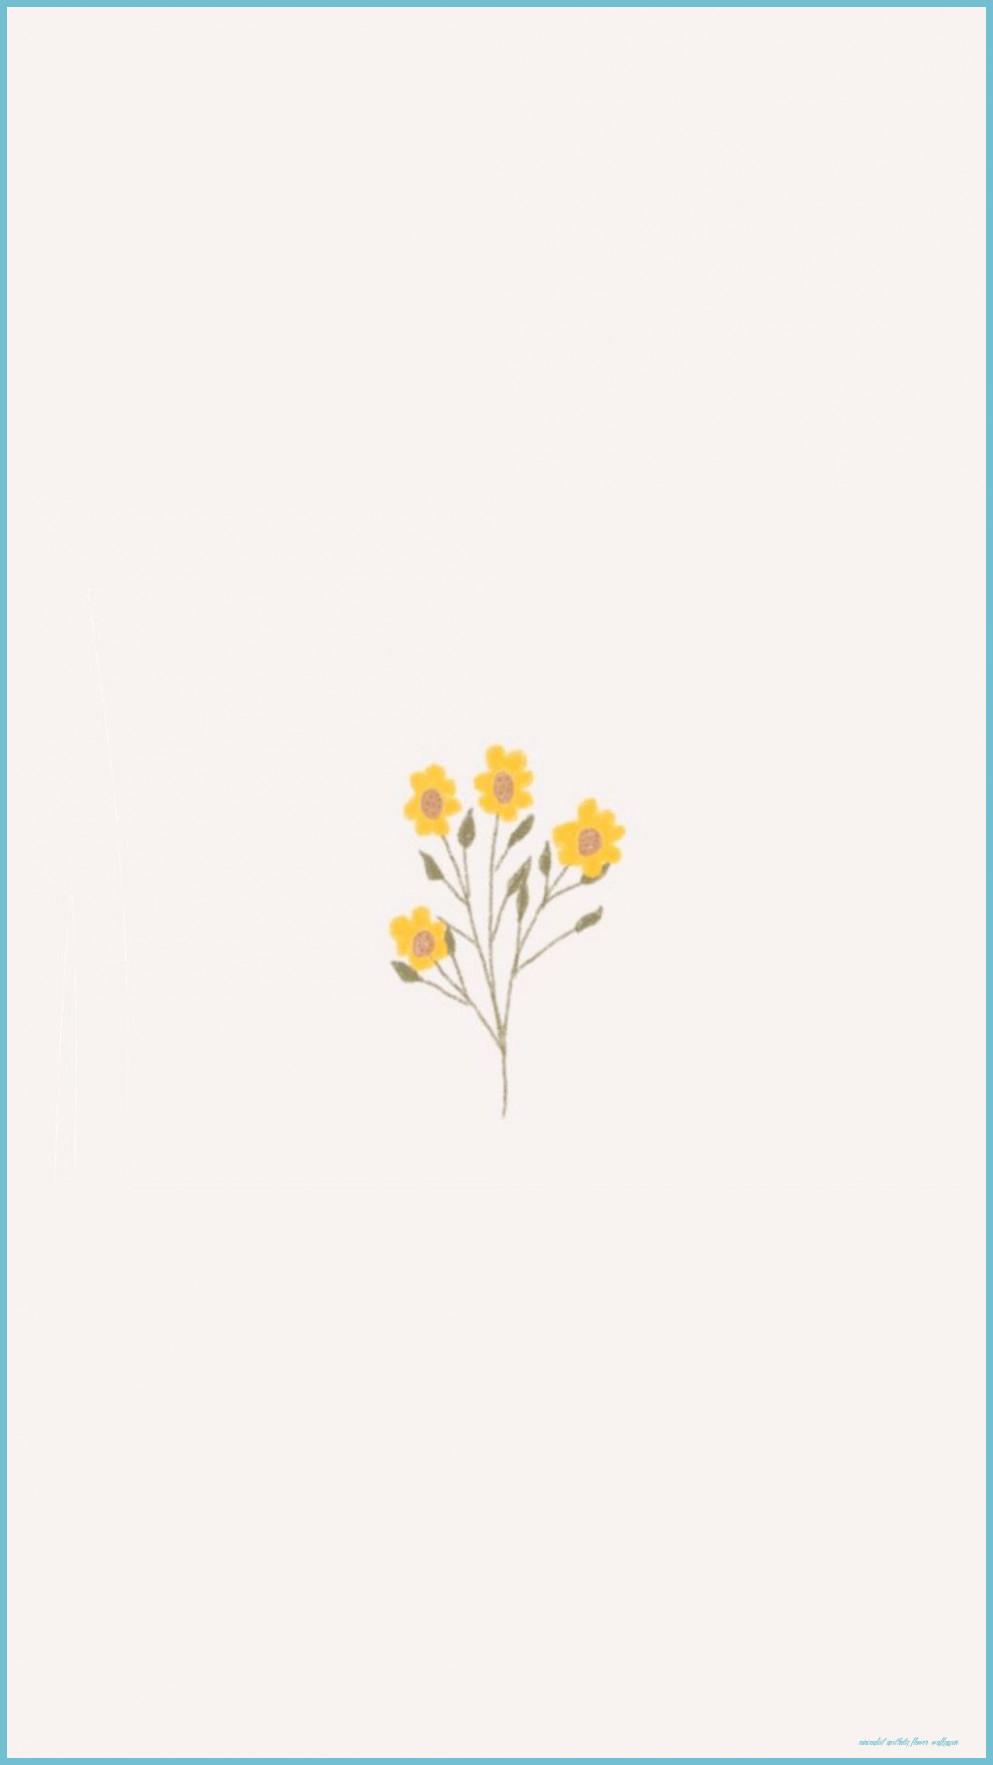 Cute Aesthetic Flower Wallpapers - Top Free Cute Aesthetic Flower ...